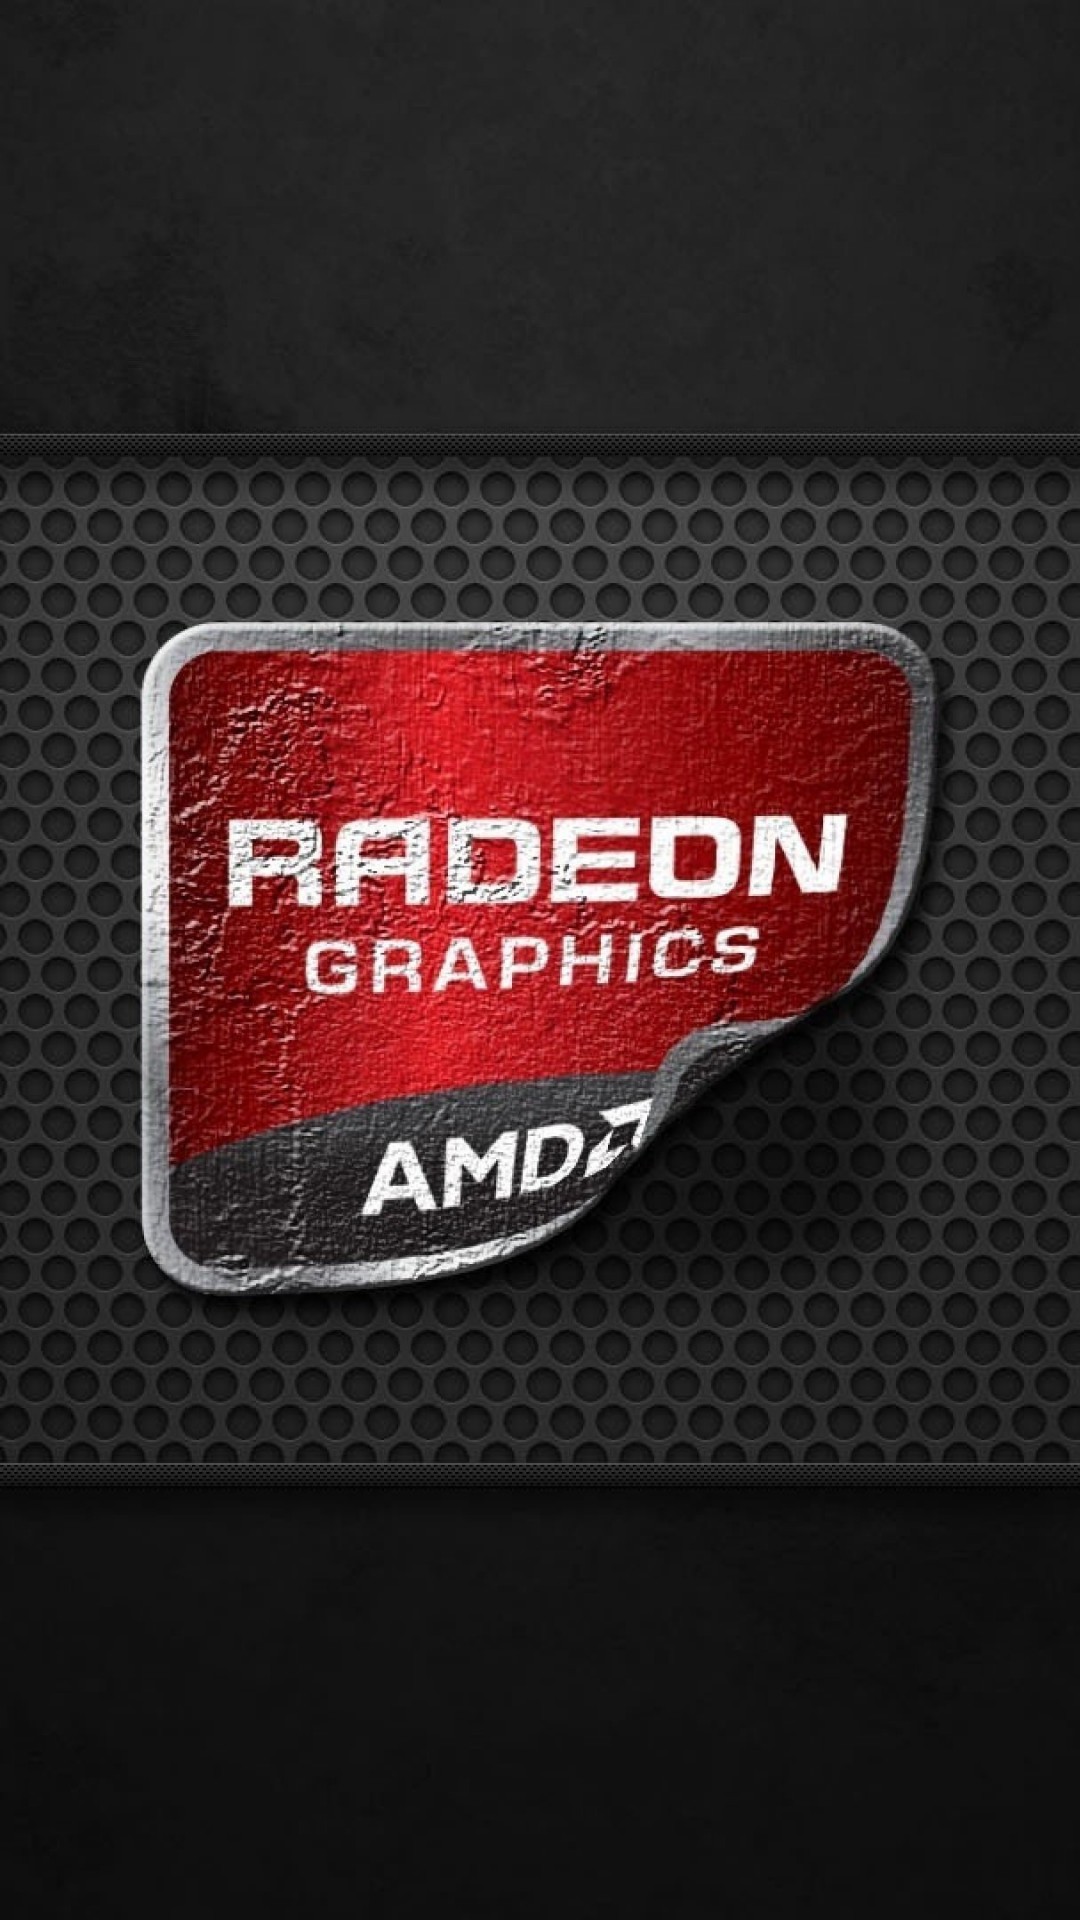 AMD Radeon Graphics Wallpaper for Google Nexus 5X